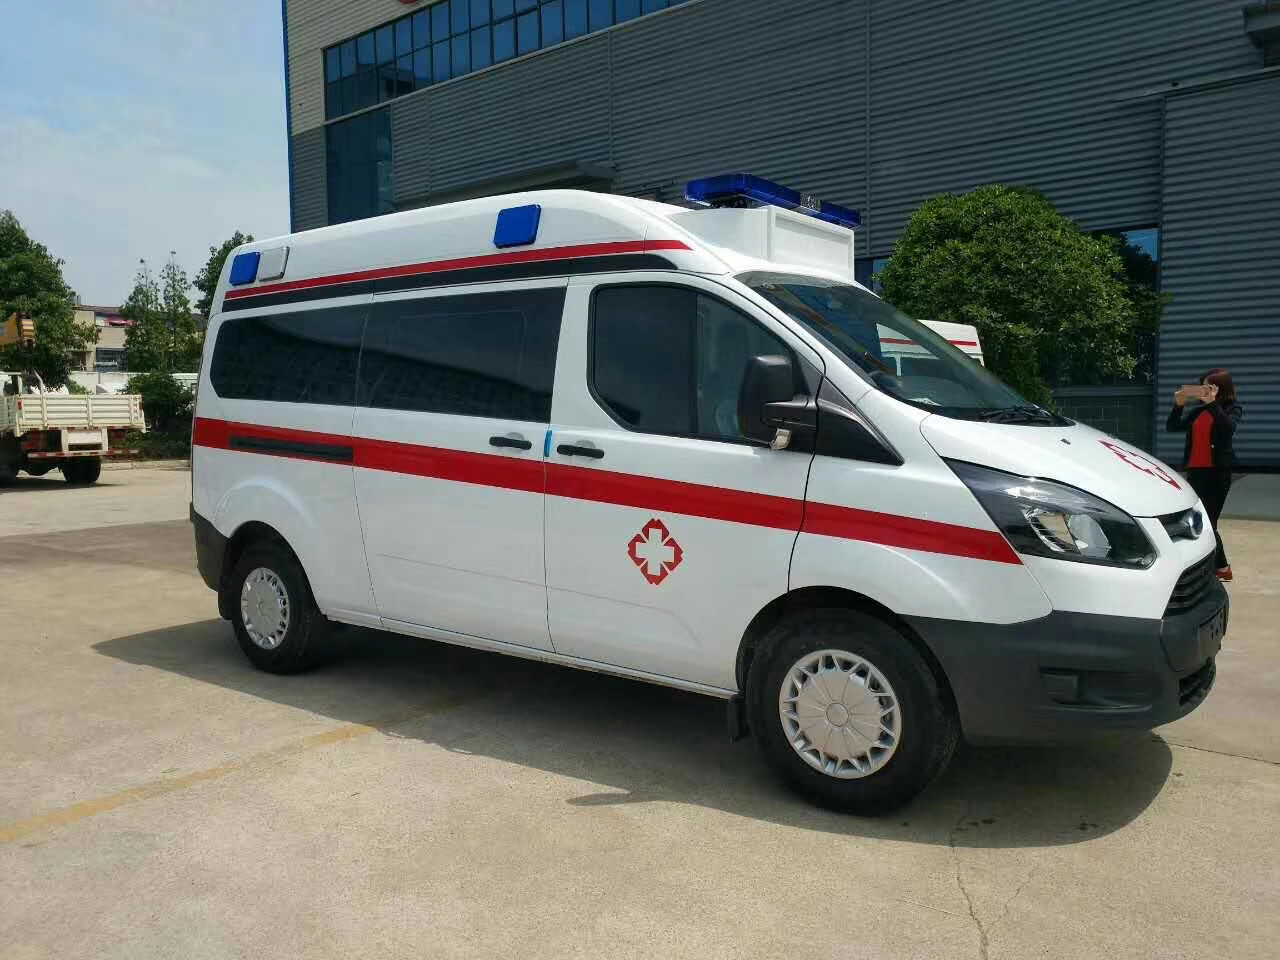 兴义市救护车护送